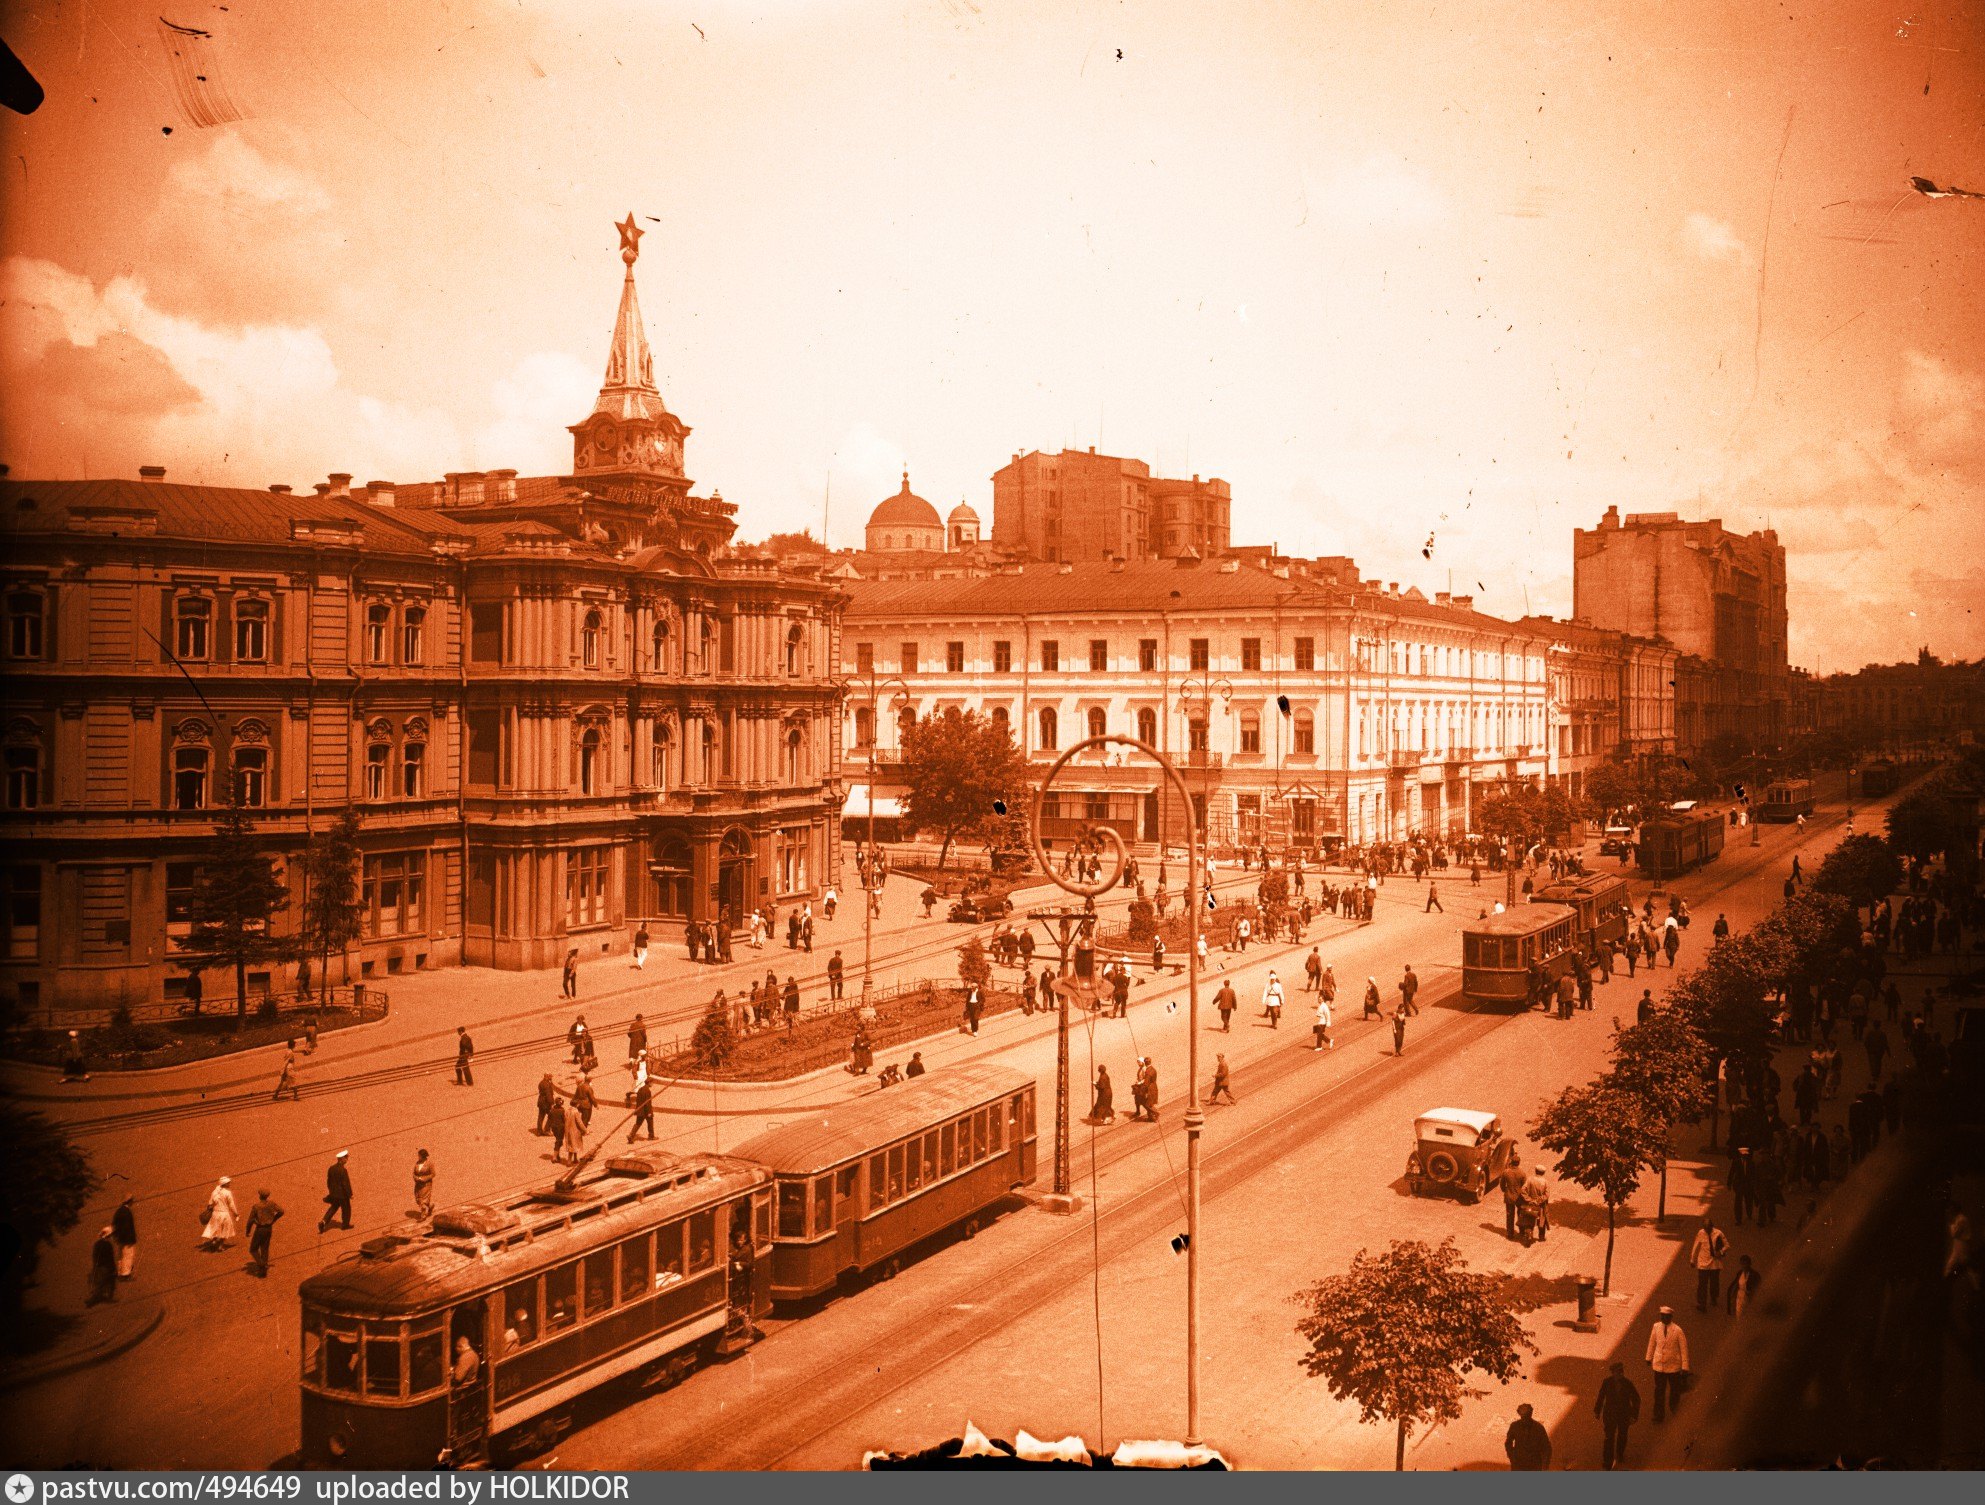 Площадь советская ялта реконструкция фото